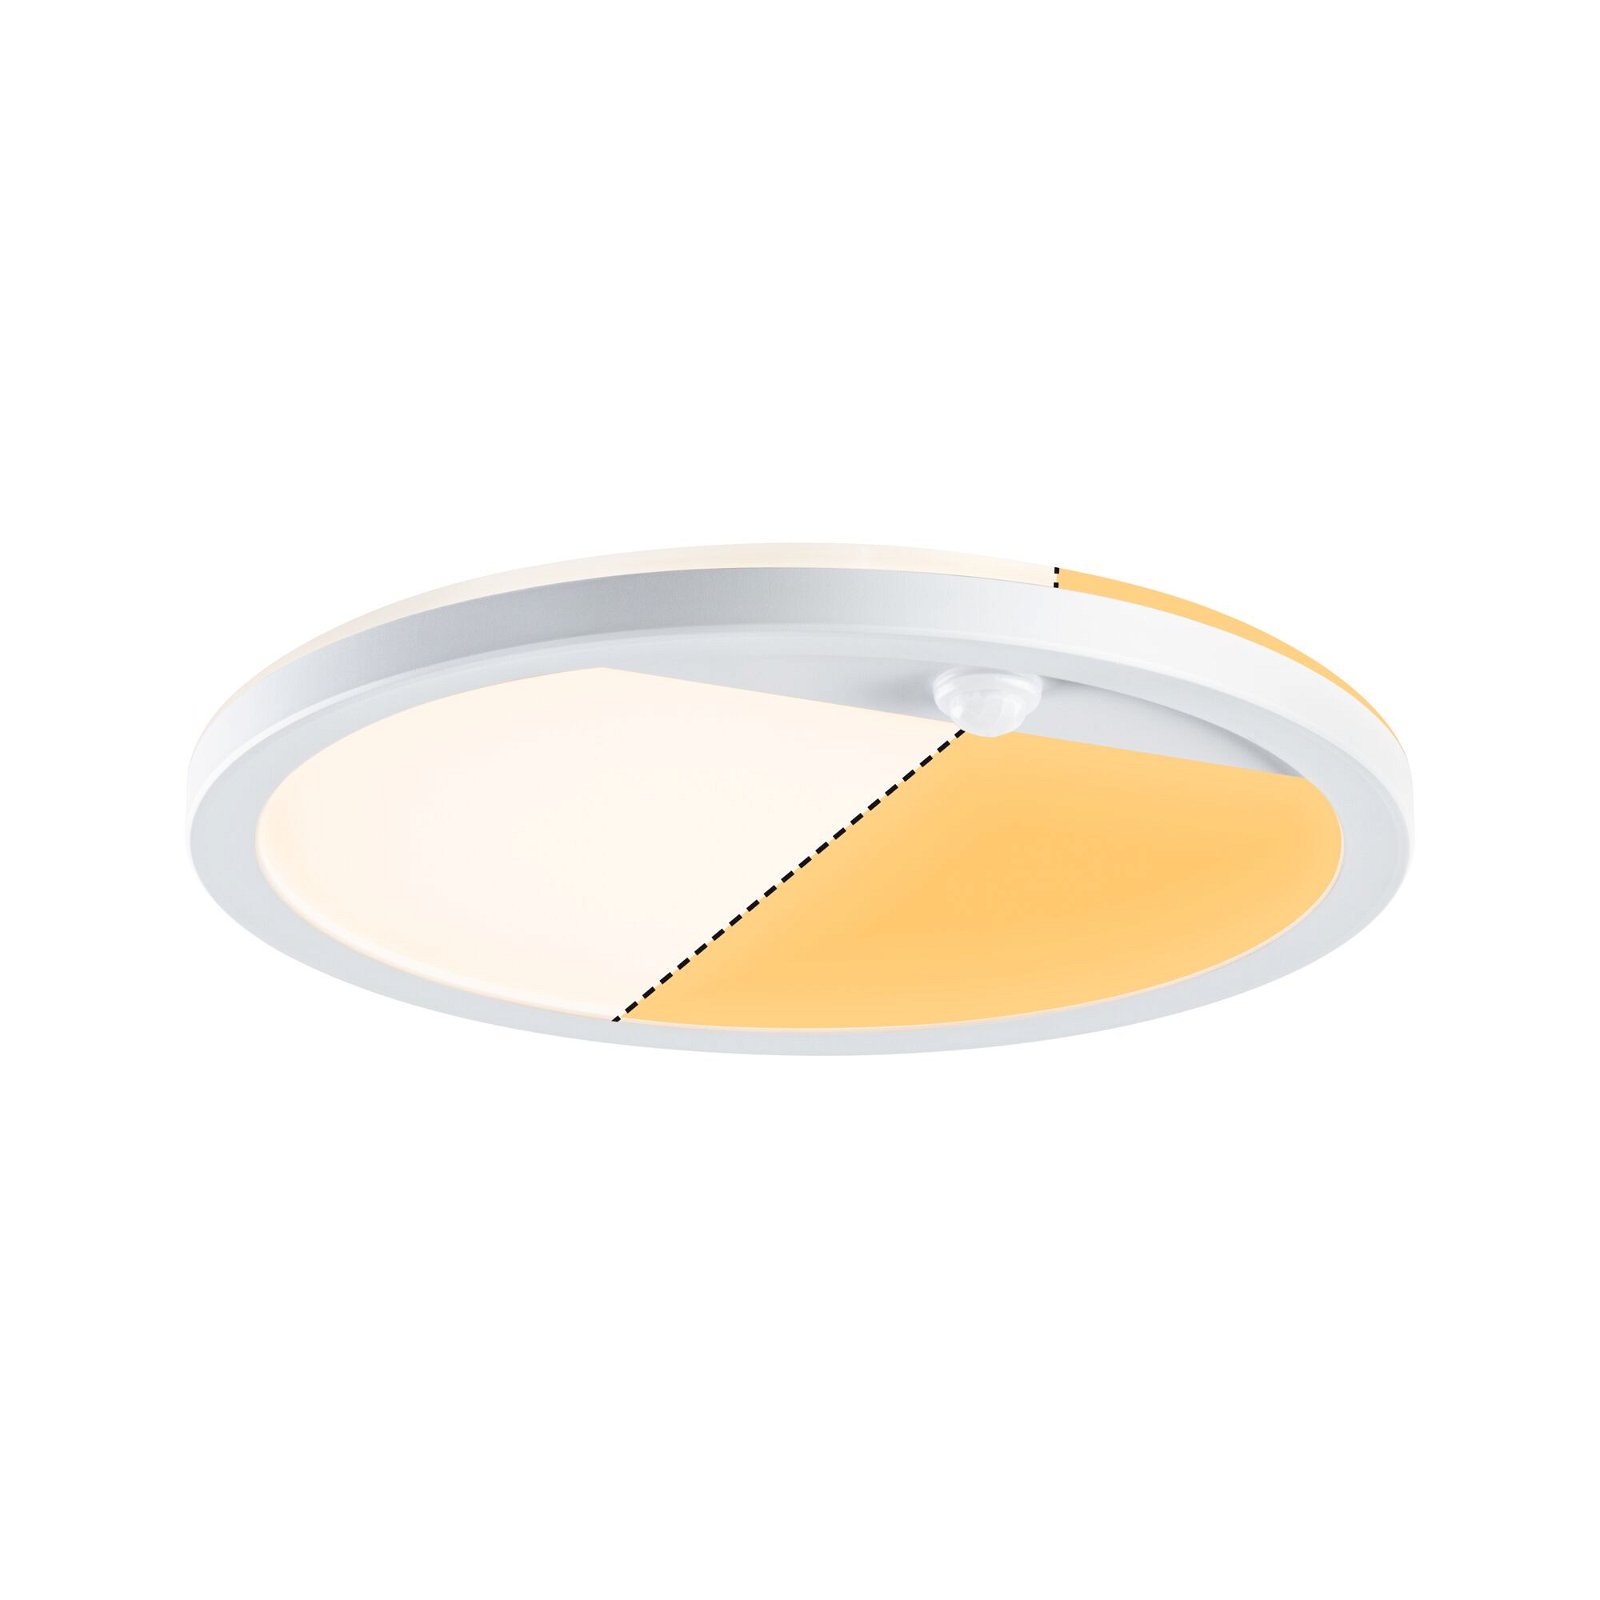 LED-paneel voor buiten Lamina Backlight Bewegingsmelder insectvriendelijk IP44 rond 280mm Tunable Warm 14W 1150lm 230V Wit Kunststof